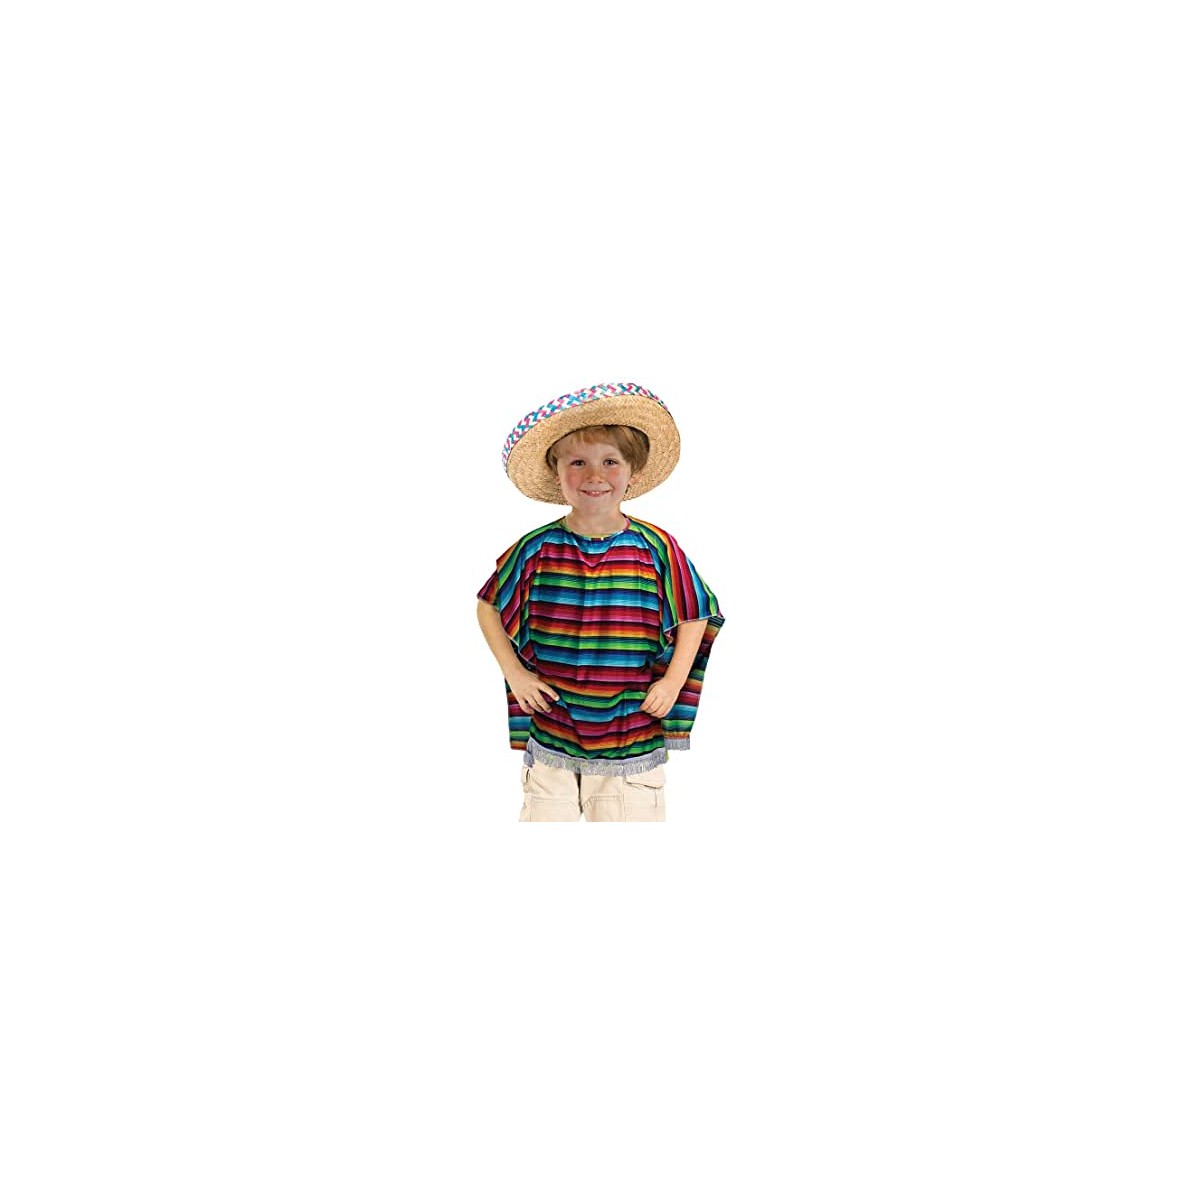 Poncho messicano, costume unisex, taglia unica per bambini